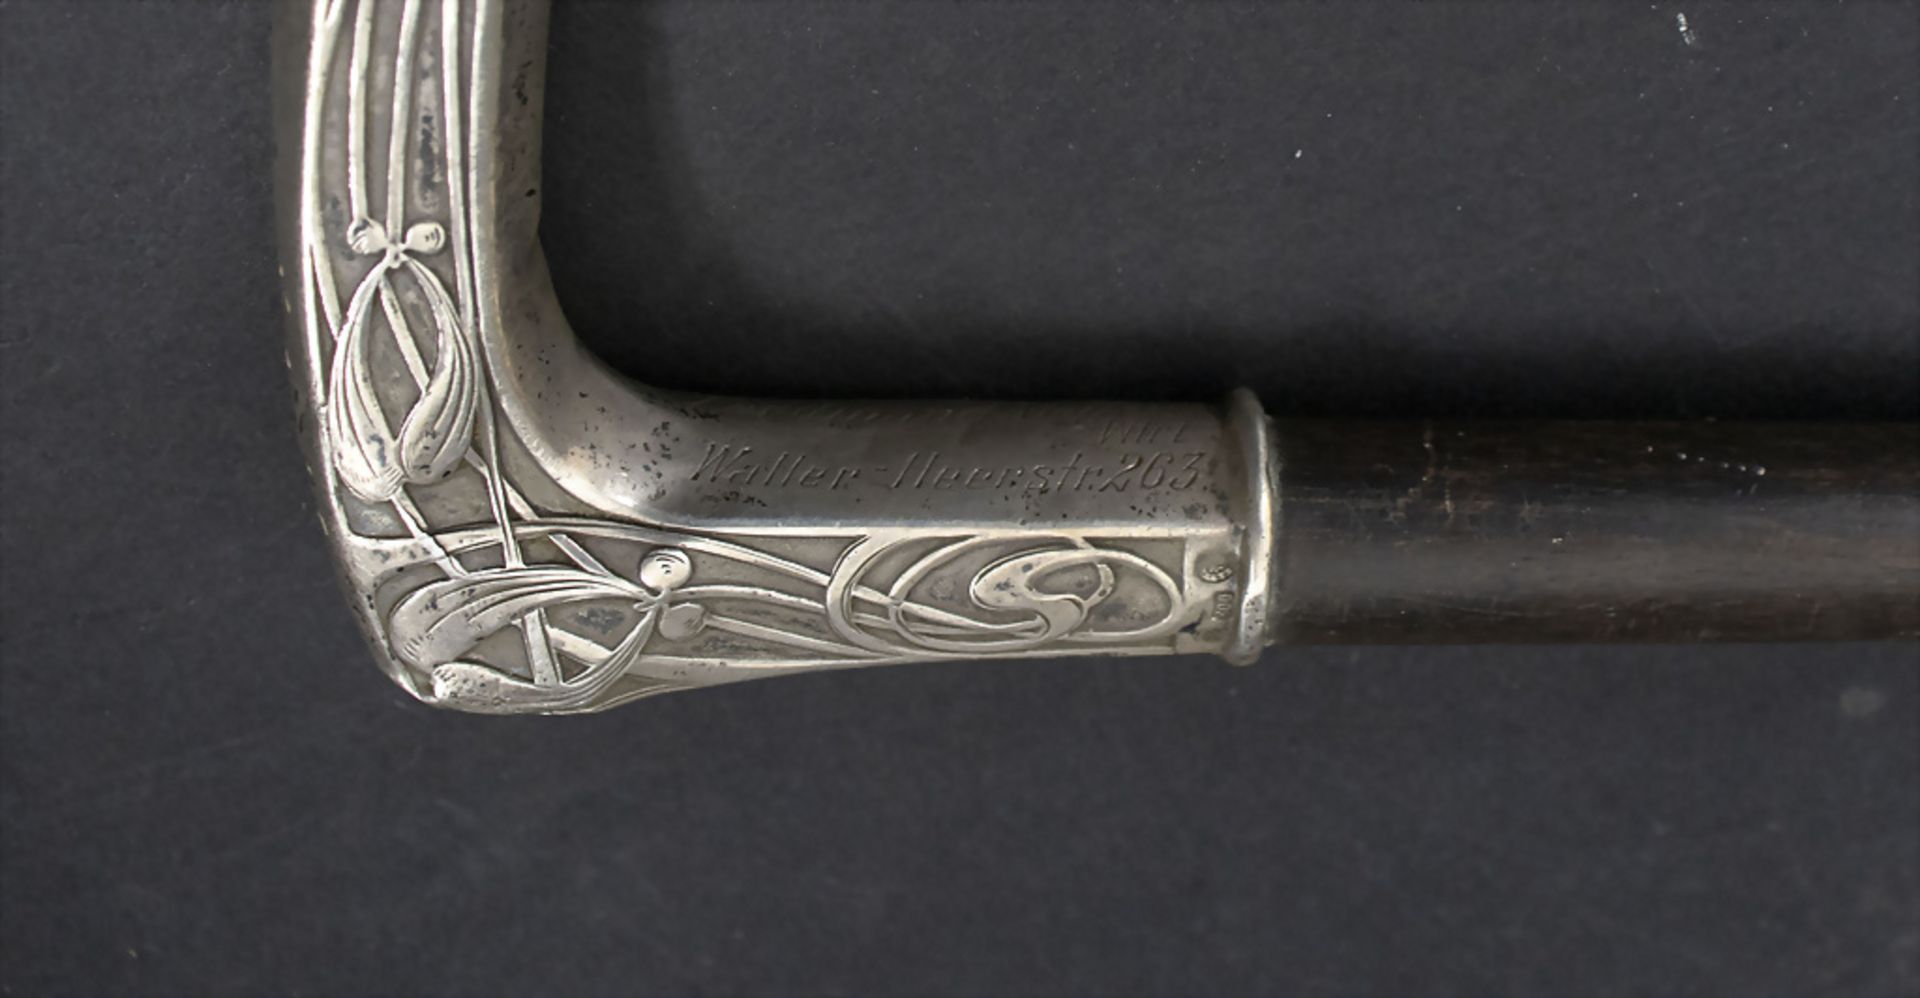 Jugendstil Spazierstock mit Silbergriff / An Art Nouveau walking stick / cane with silver ... - Bild 4 aus 4